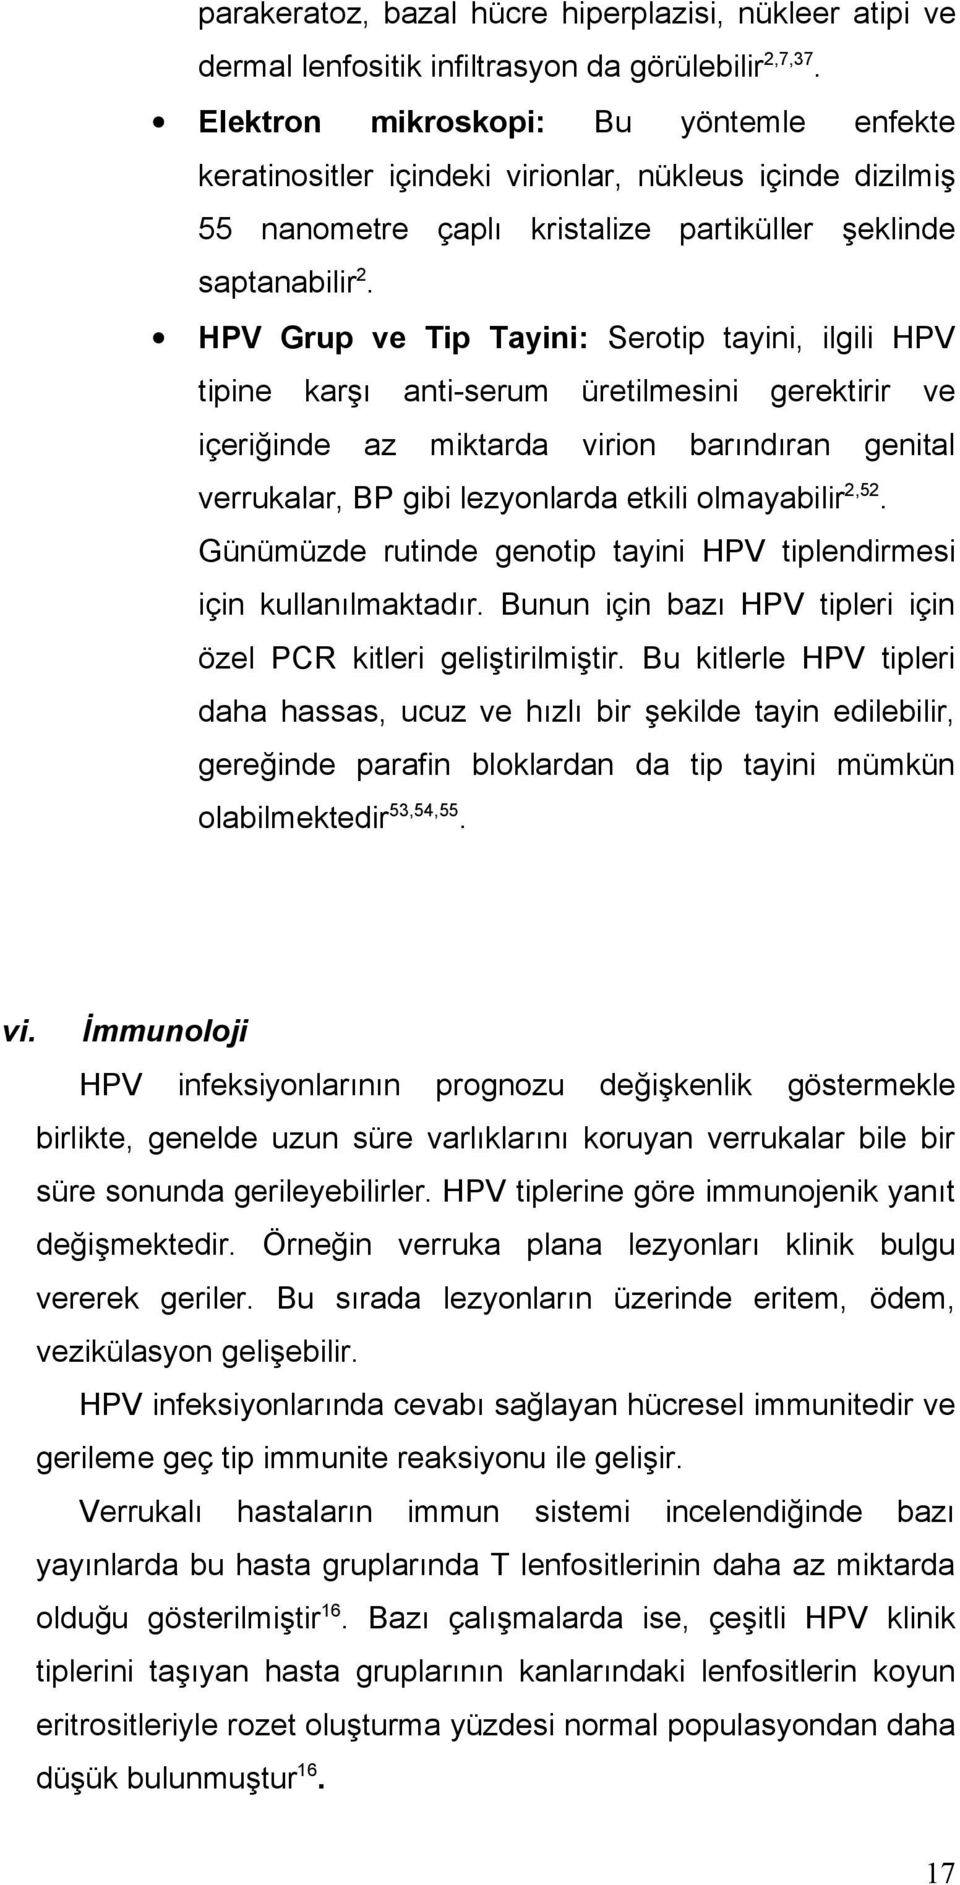 HPV Grup ve Tip Tayini: Serotip tayini, ilgili HPV tipine karşı içeriğinde az anti-serum miktarda üretilmesini virion gerektirir barındıran ve genital verrukalar, BP gibi lezyonlarda etkili